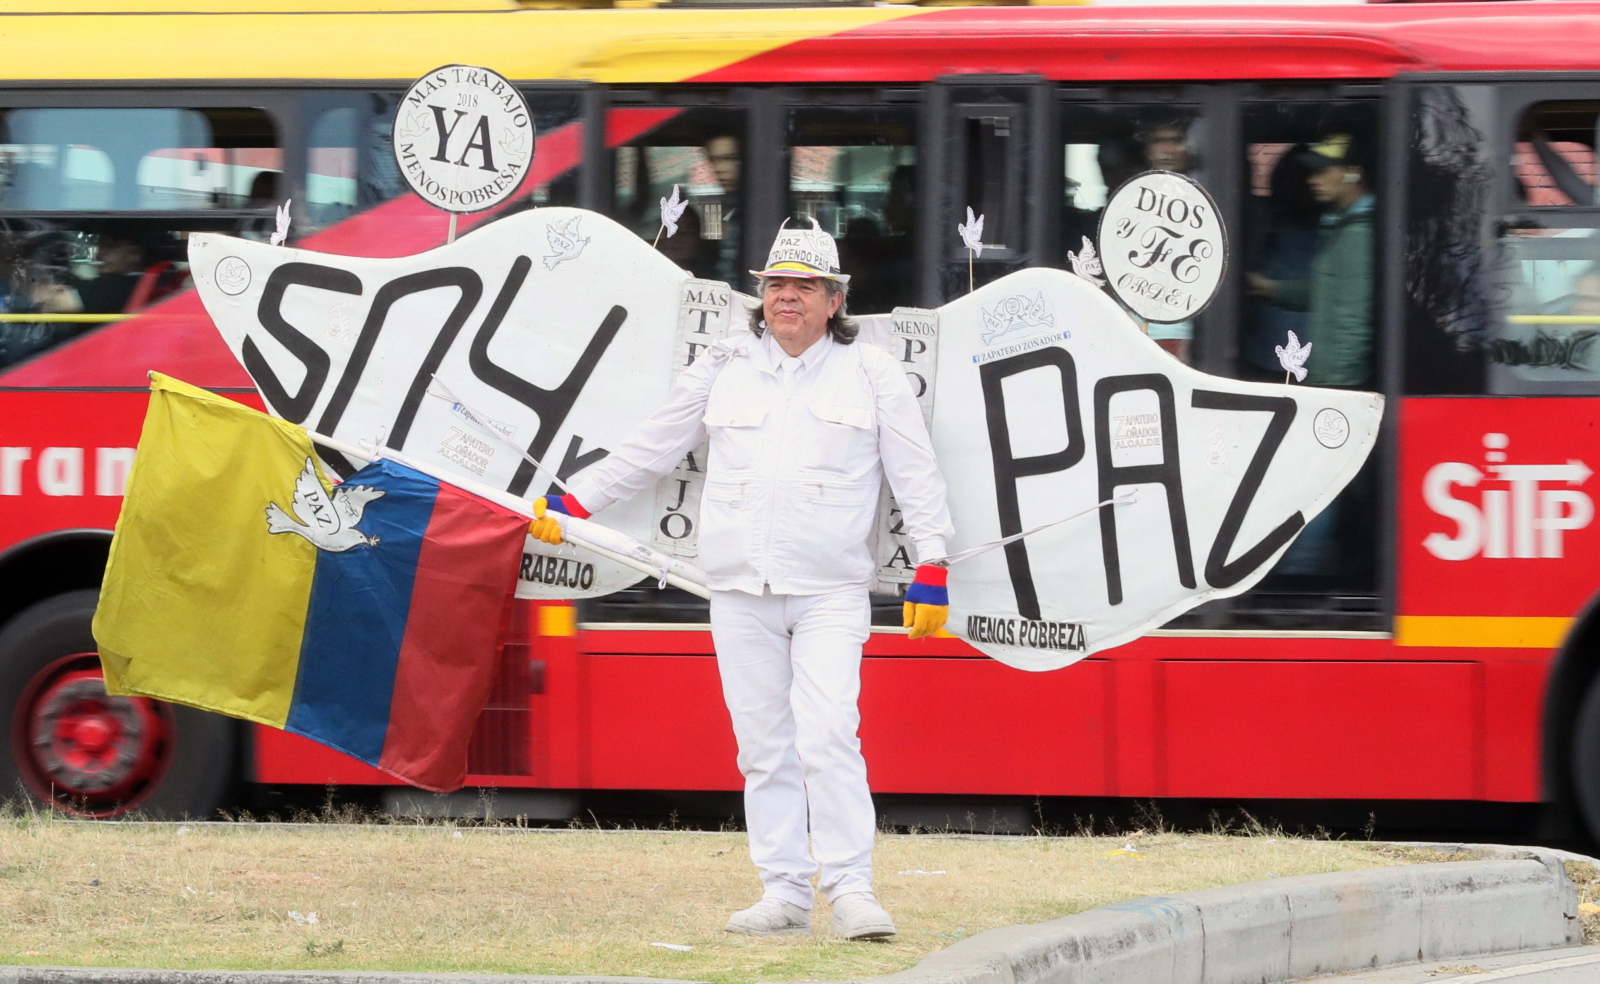 Protesty po zamach u Kolumbii EPA/MAURICIO DUENAS CASTANEDA 